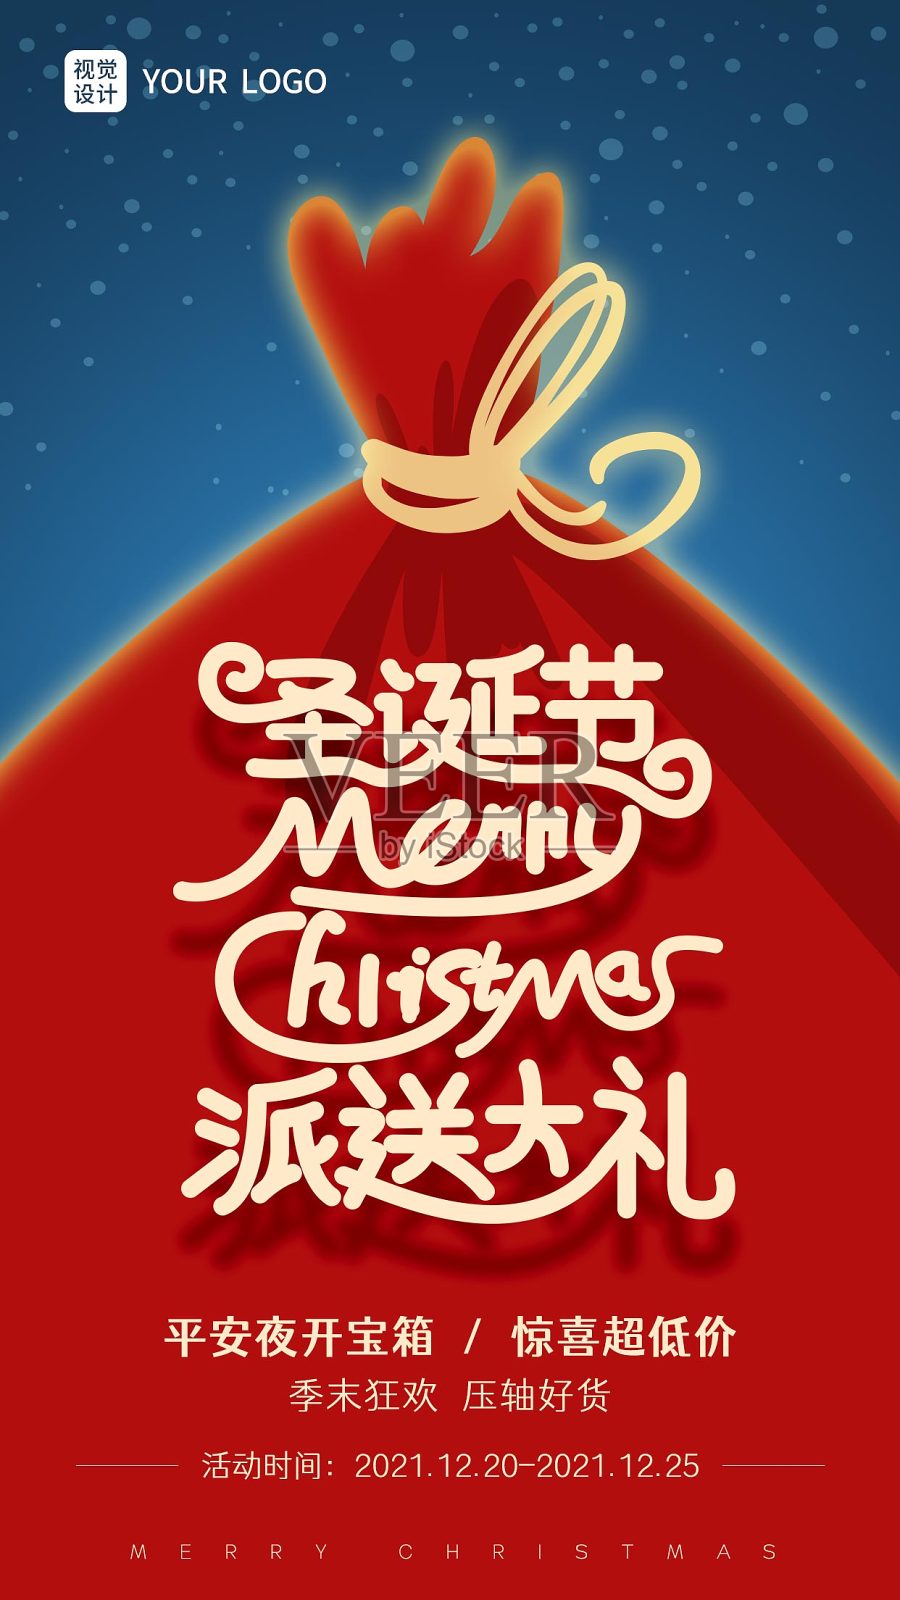 圣诞节红色扁平冬季促销派送大礼手机海报设计模板素材